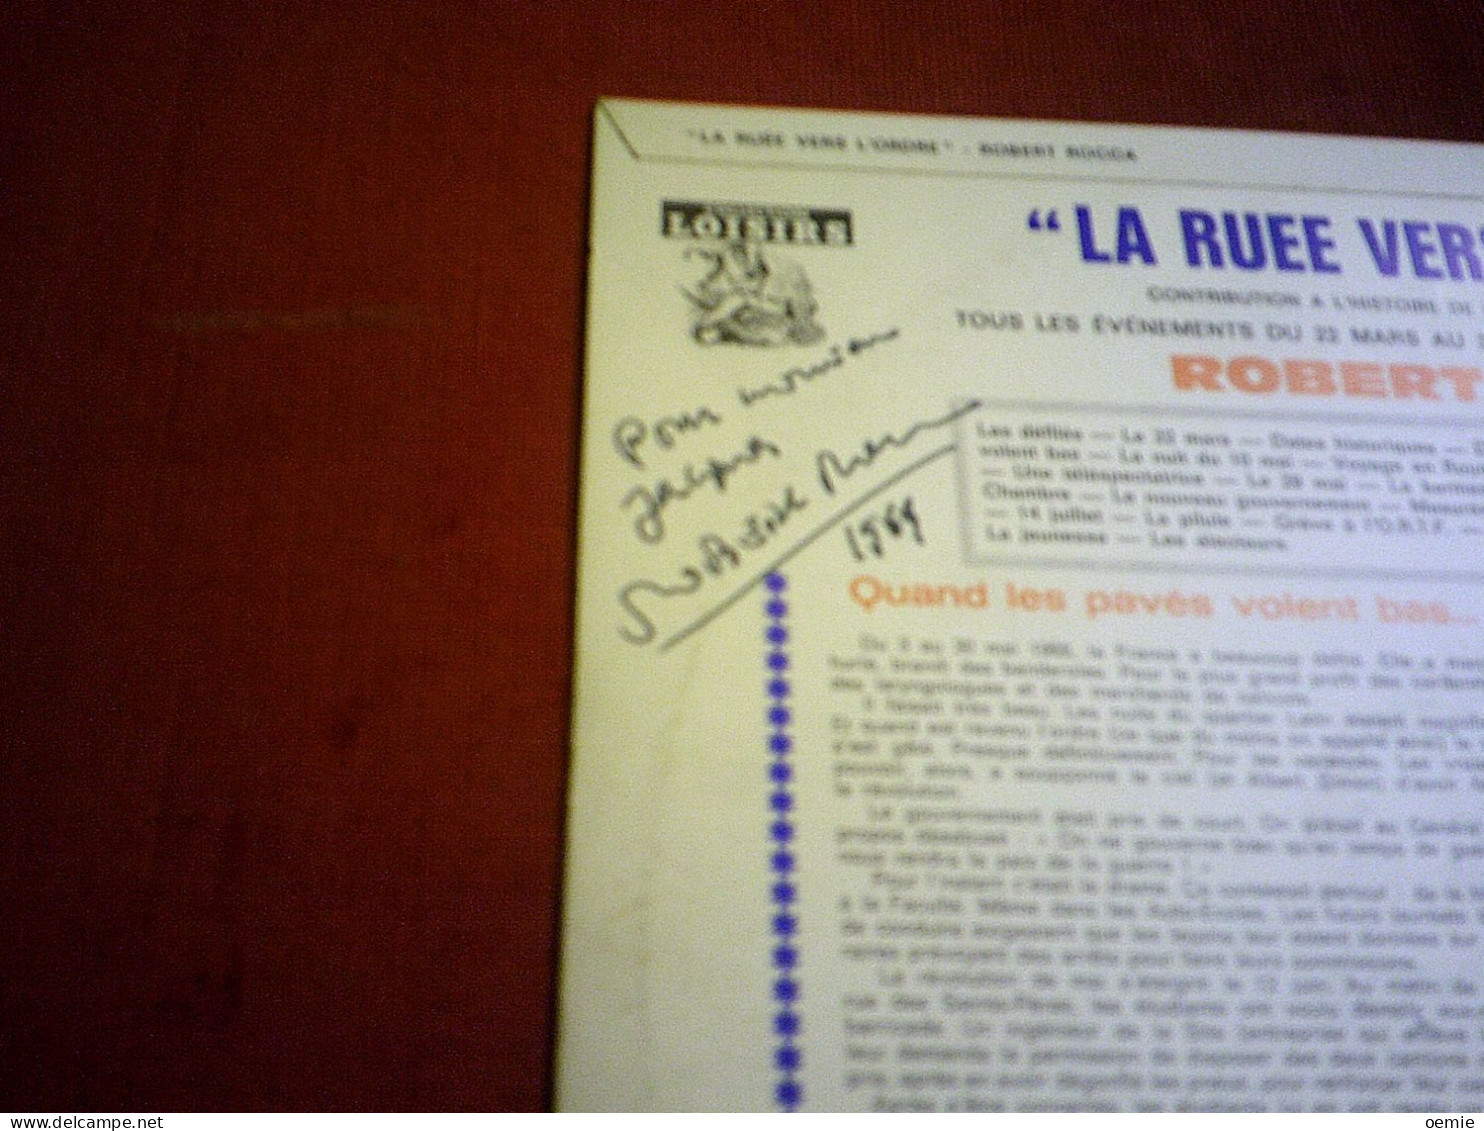 LA RUEE VERTS L'ORDRE   TOUS LES EVENEMENTS DU 22 MARS AU 30 JUIN 1968 PAR ROBERT ROCCA  AVEC AUTOGRAPHE AU DOS DE LA PO - Humor, Cabaret